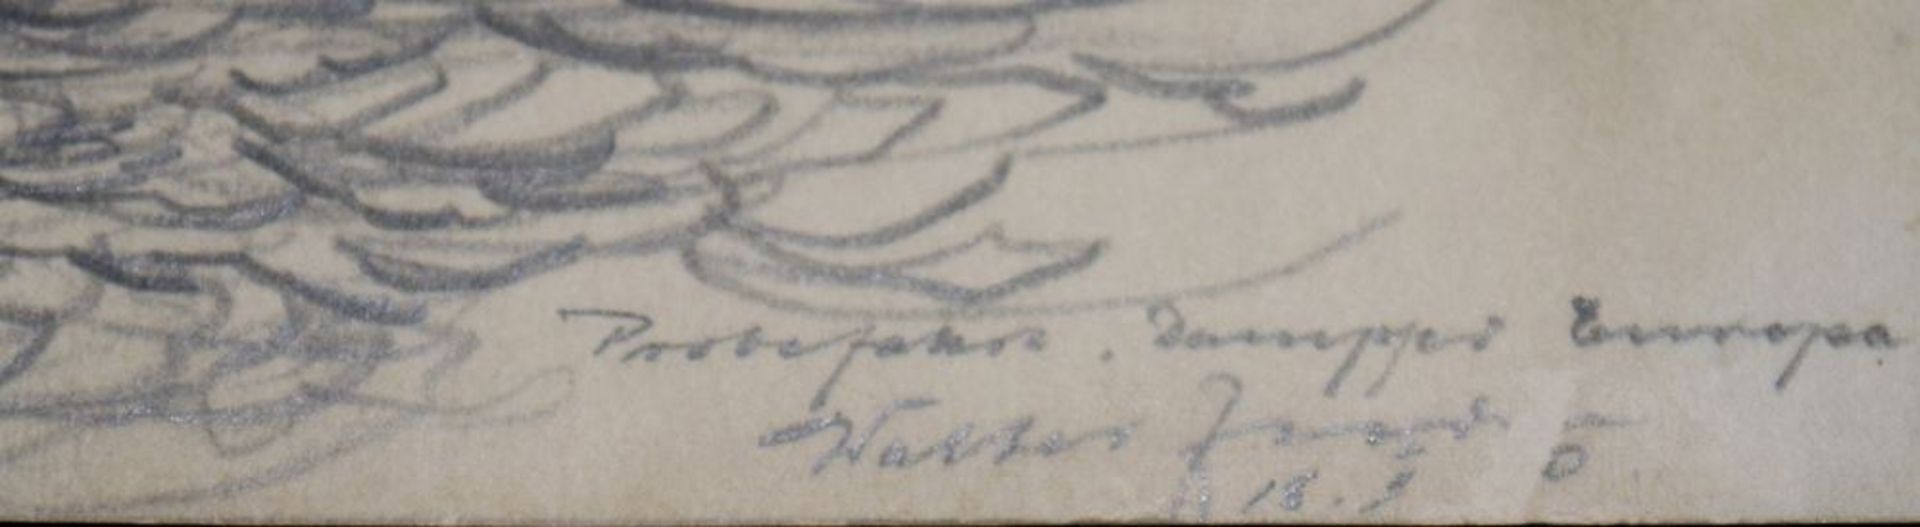 Walter Zeeden, " Probefahrt Dampfer Europa in Hamburg am 22.2.1930 ", Zeichnung - Bild 2 aus 2